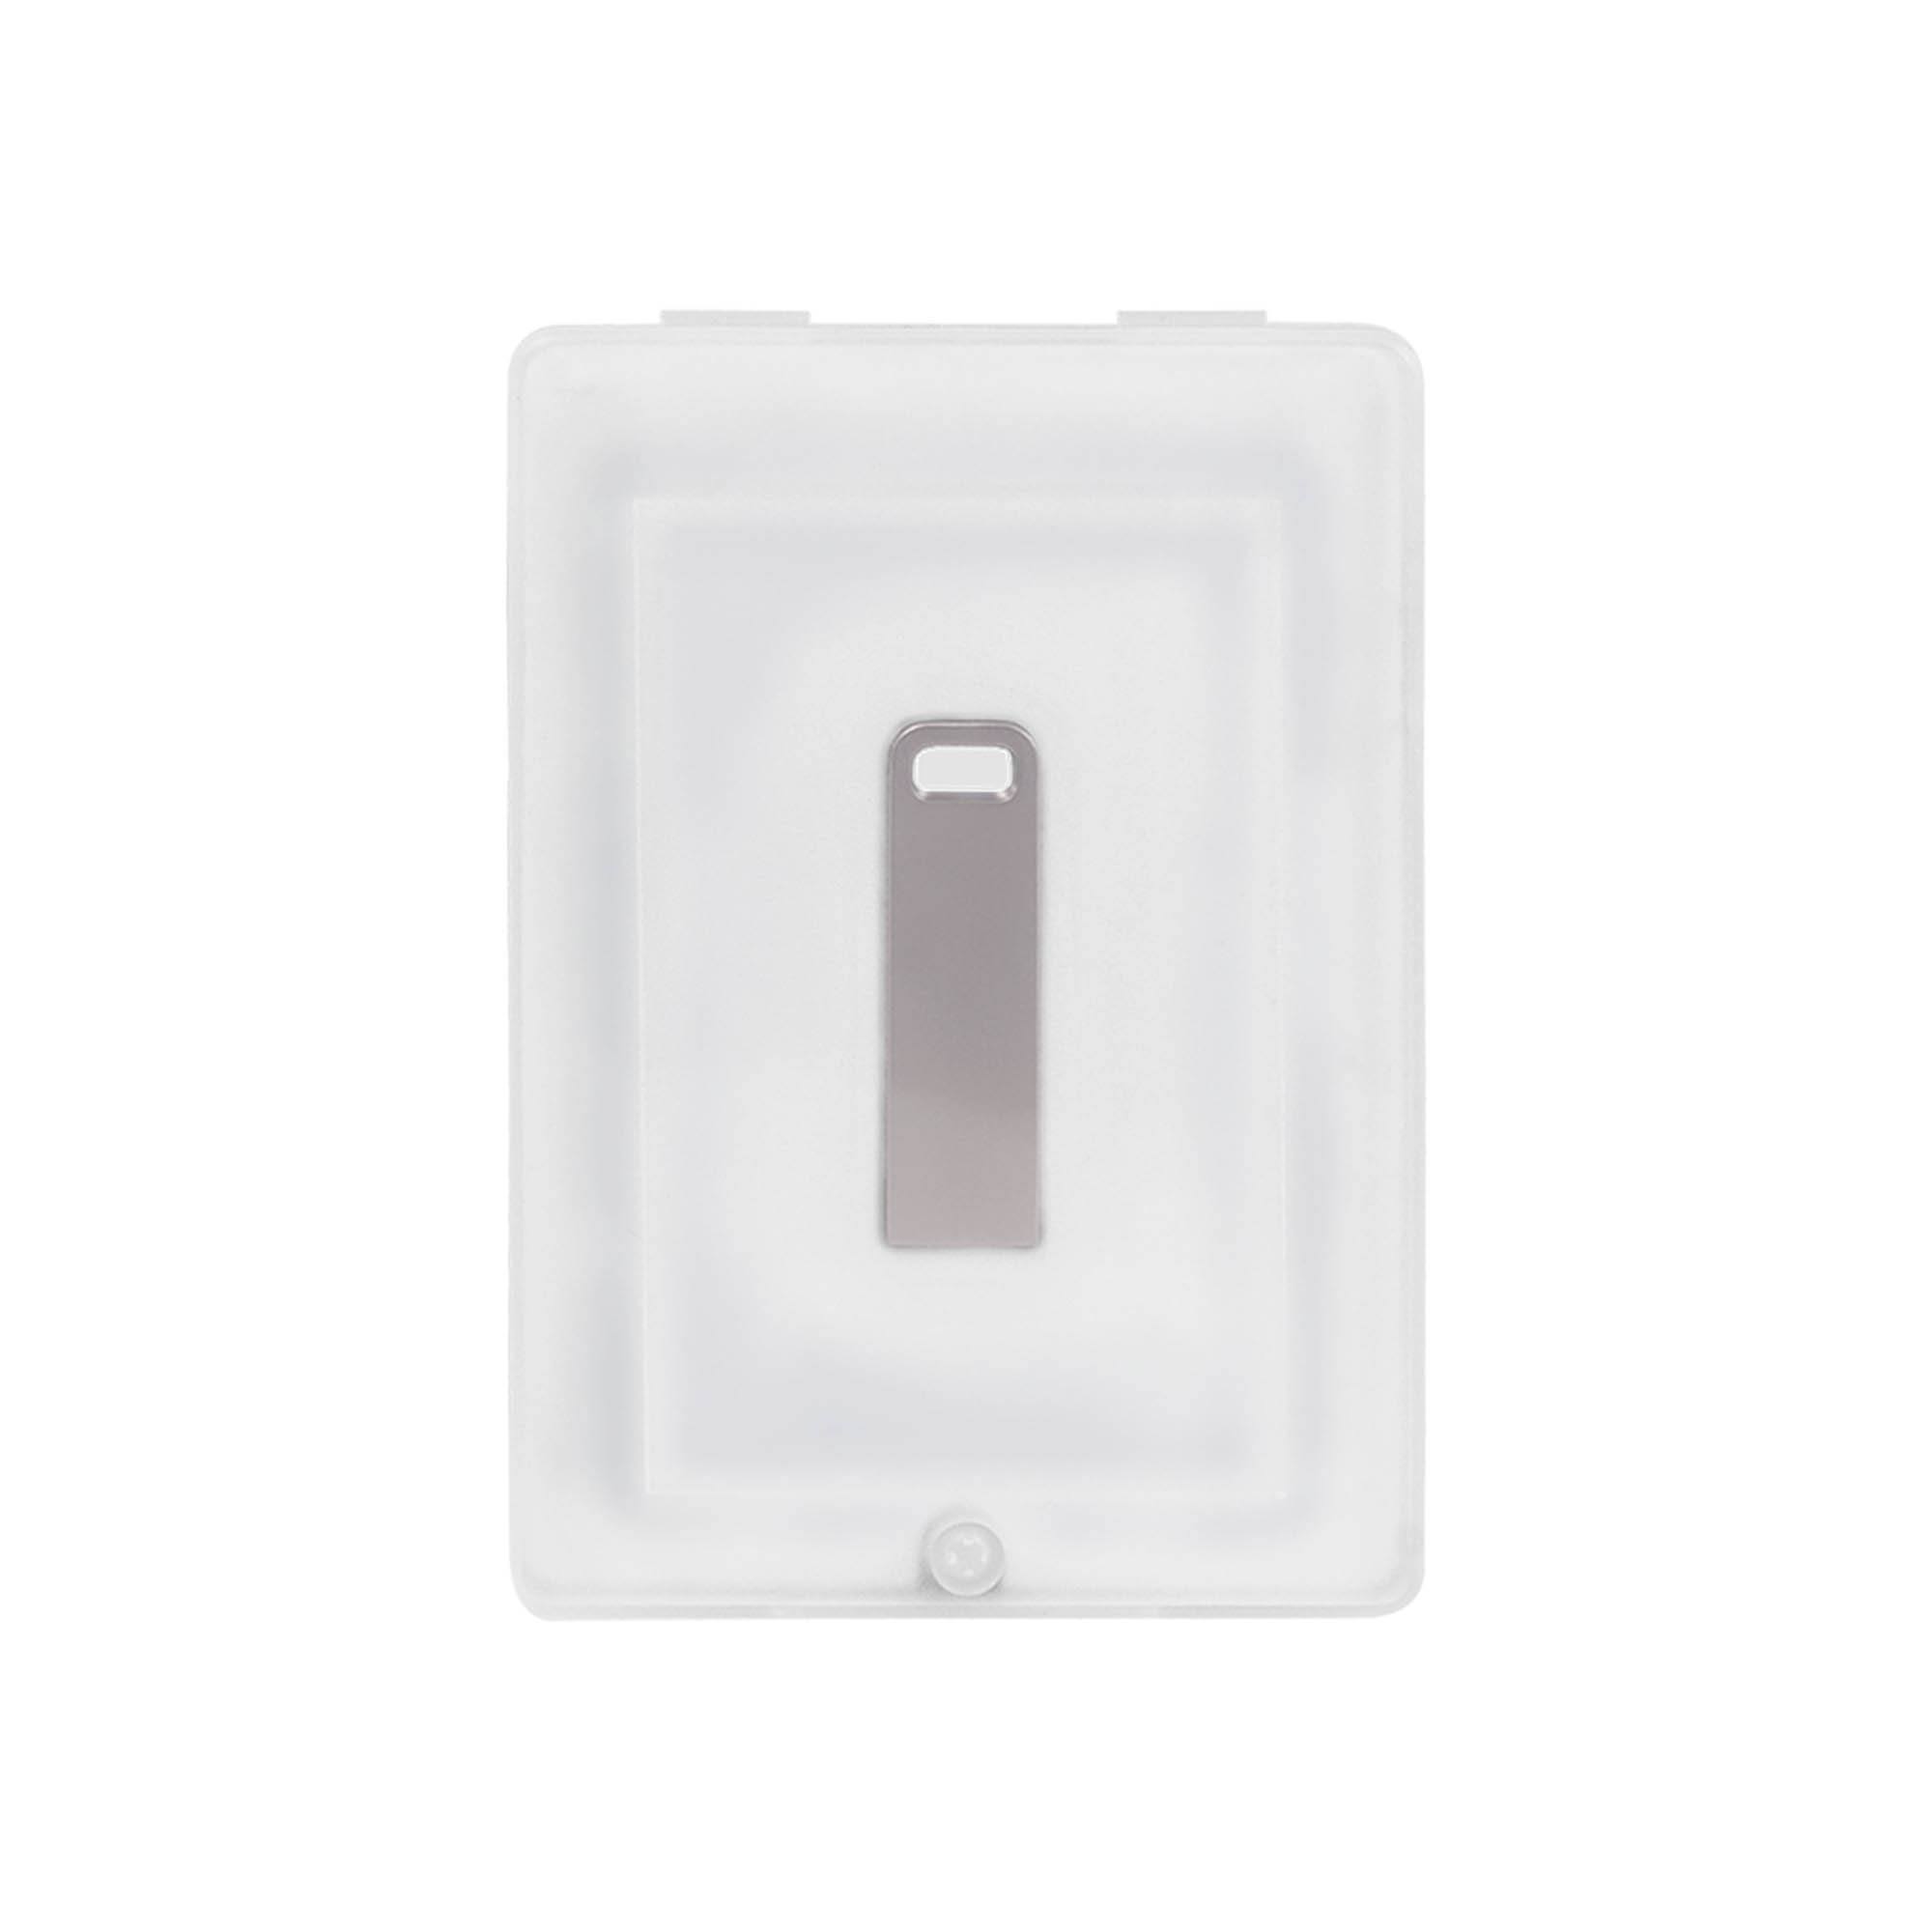 Артикул: AUSB-62191-080/1 — USB Флешка, Flash, 16Gb, серебряный, в подарочной упаковке